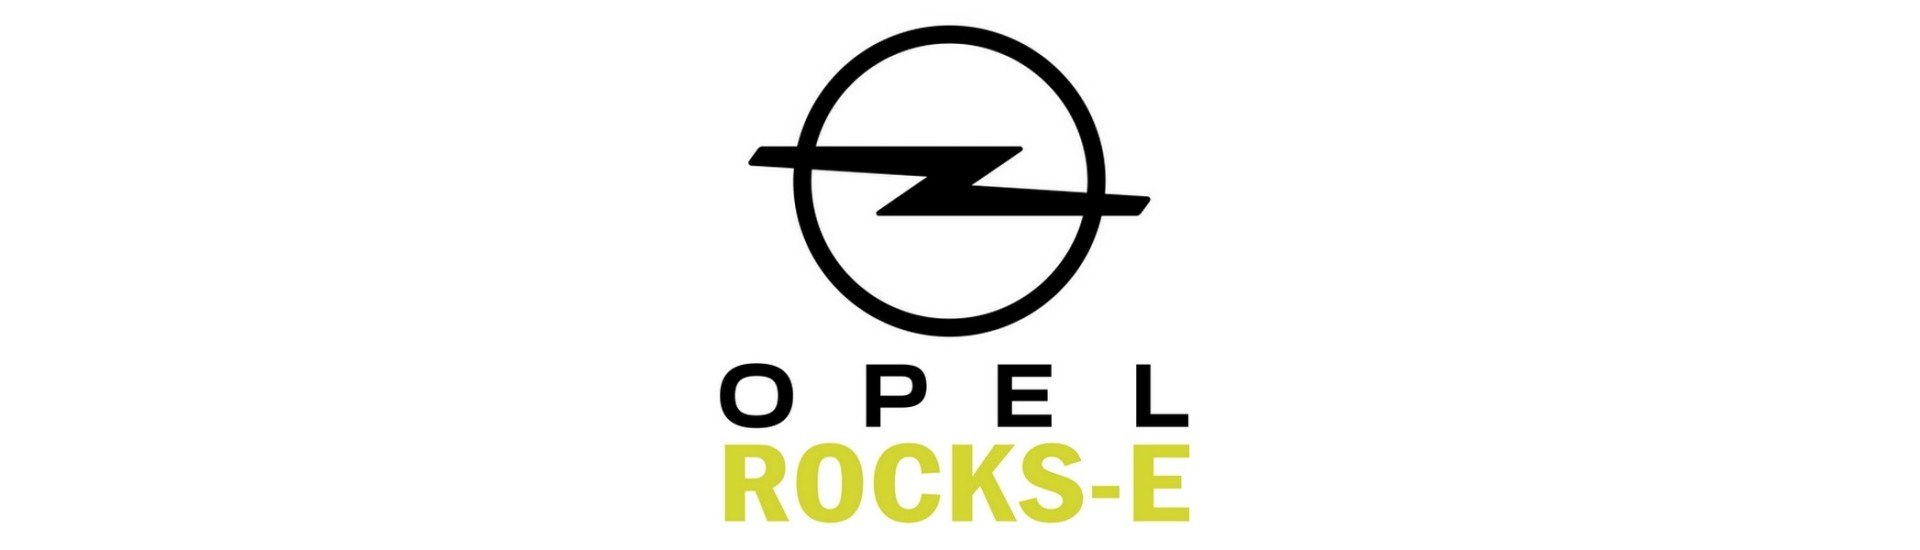 Colonne de direction pour voiture sans permis Opel Rocks-E